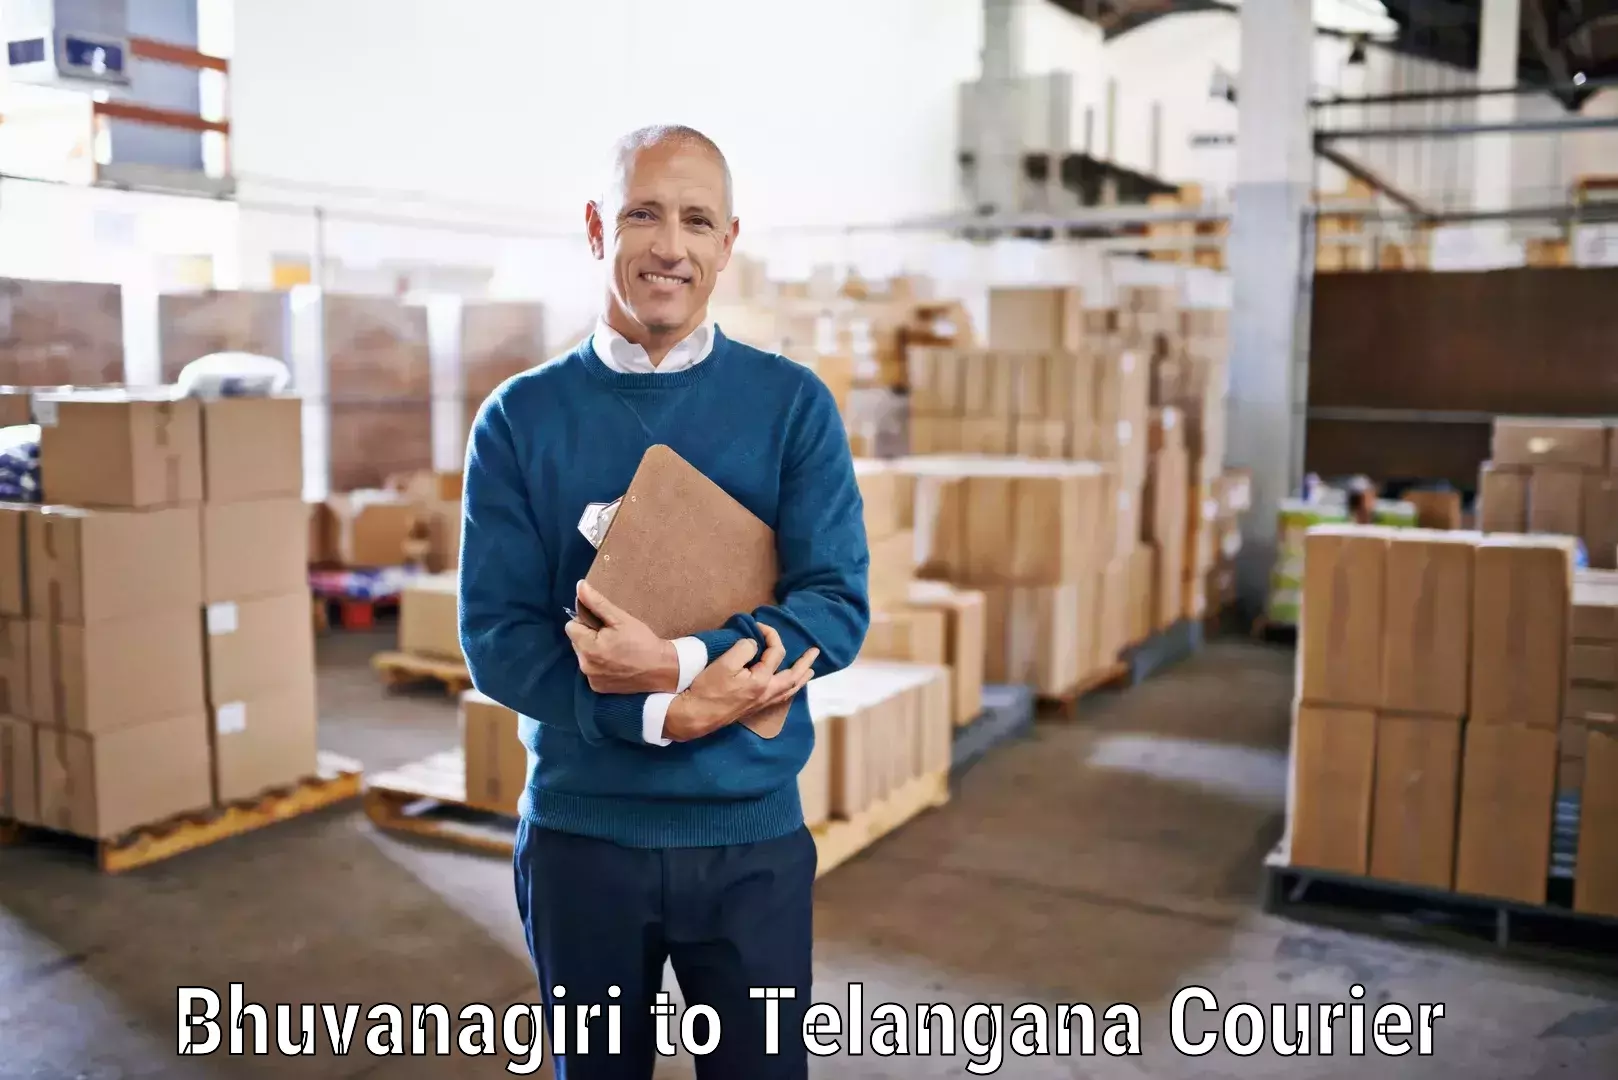 Efficient courier operations Bhuvanagiri to Hyderabad